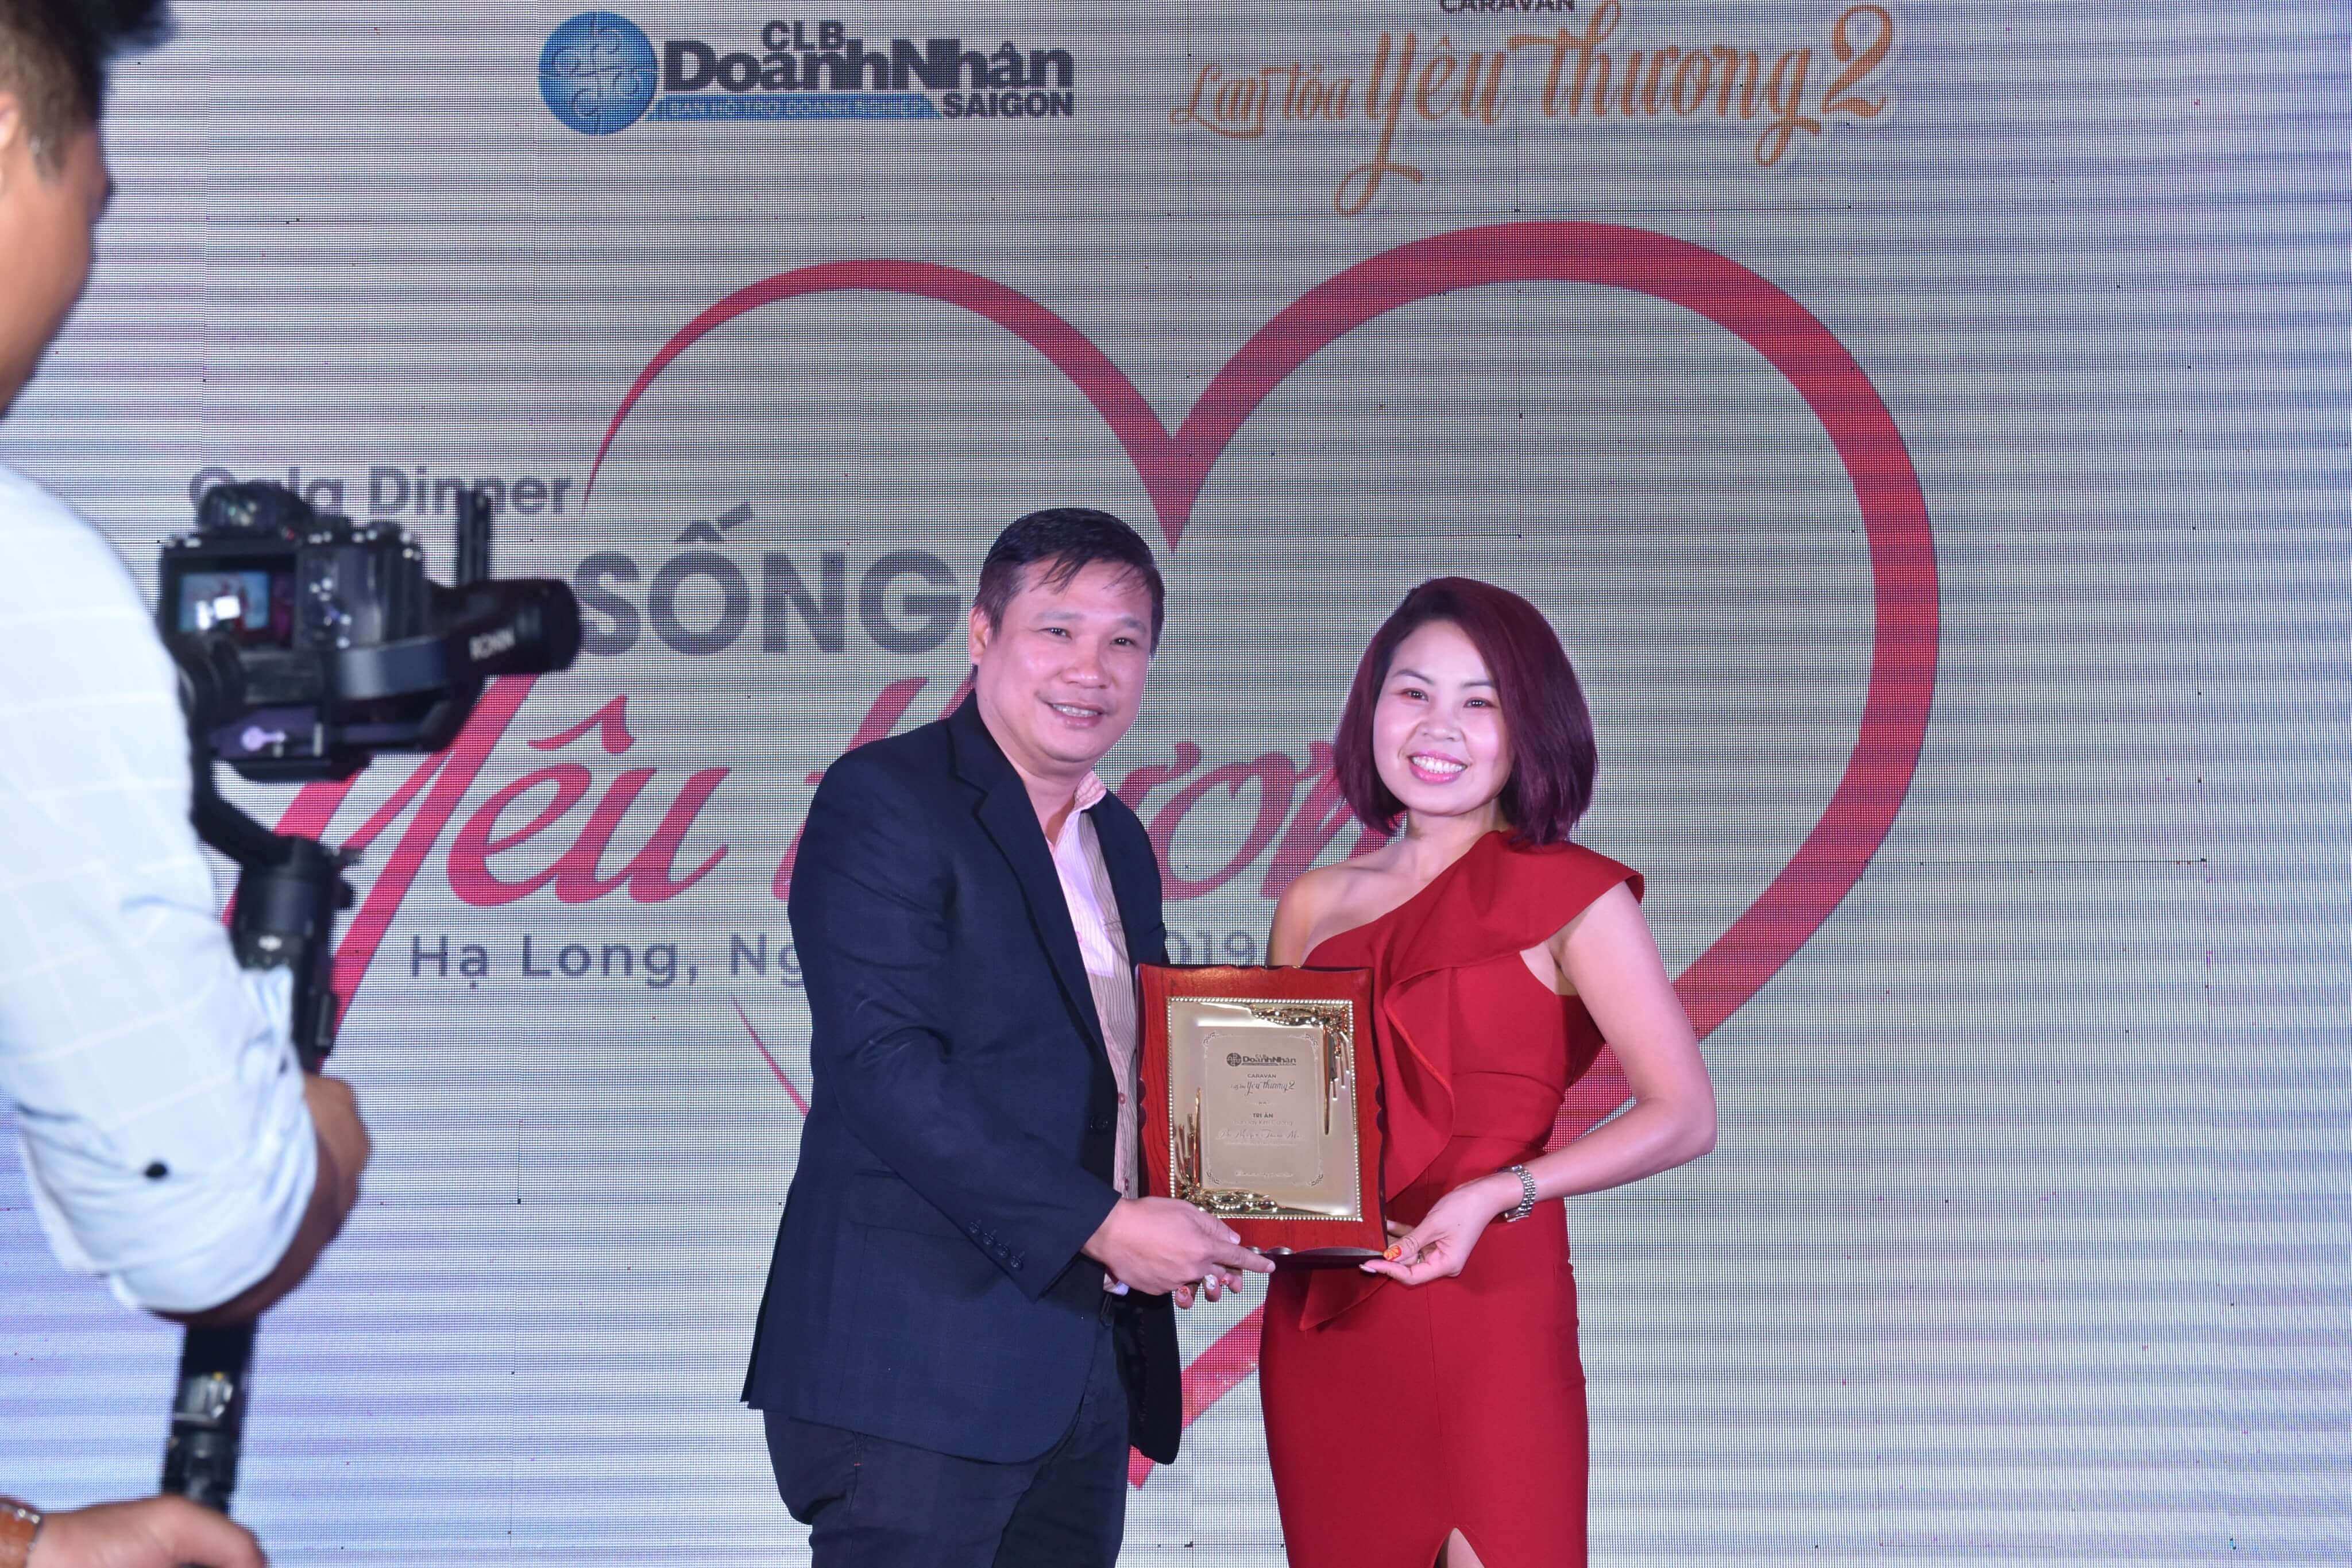 CEO Thanh Mai nhận giấy khen từ Câu lạc bộ Doanh Nhân Sài Gòn